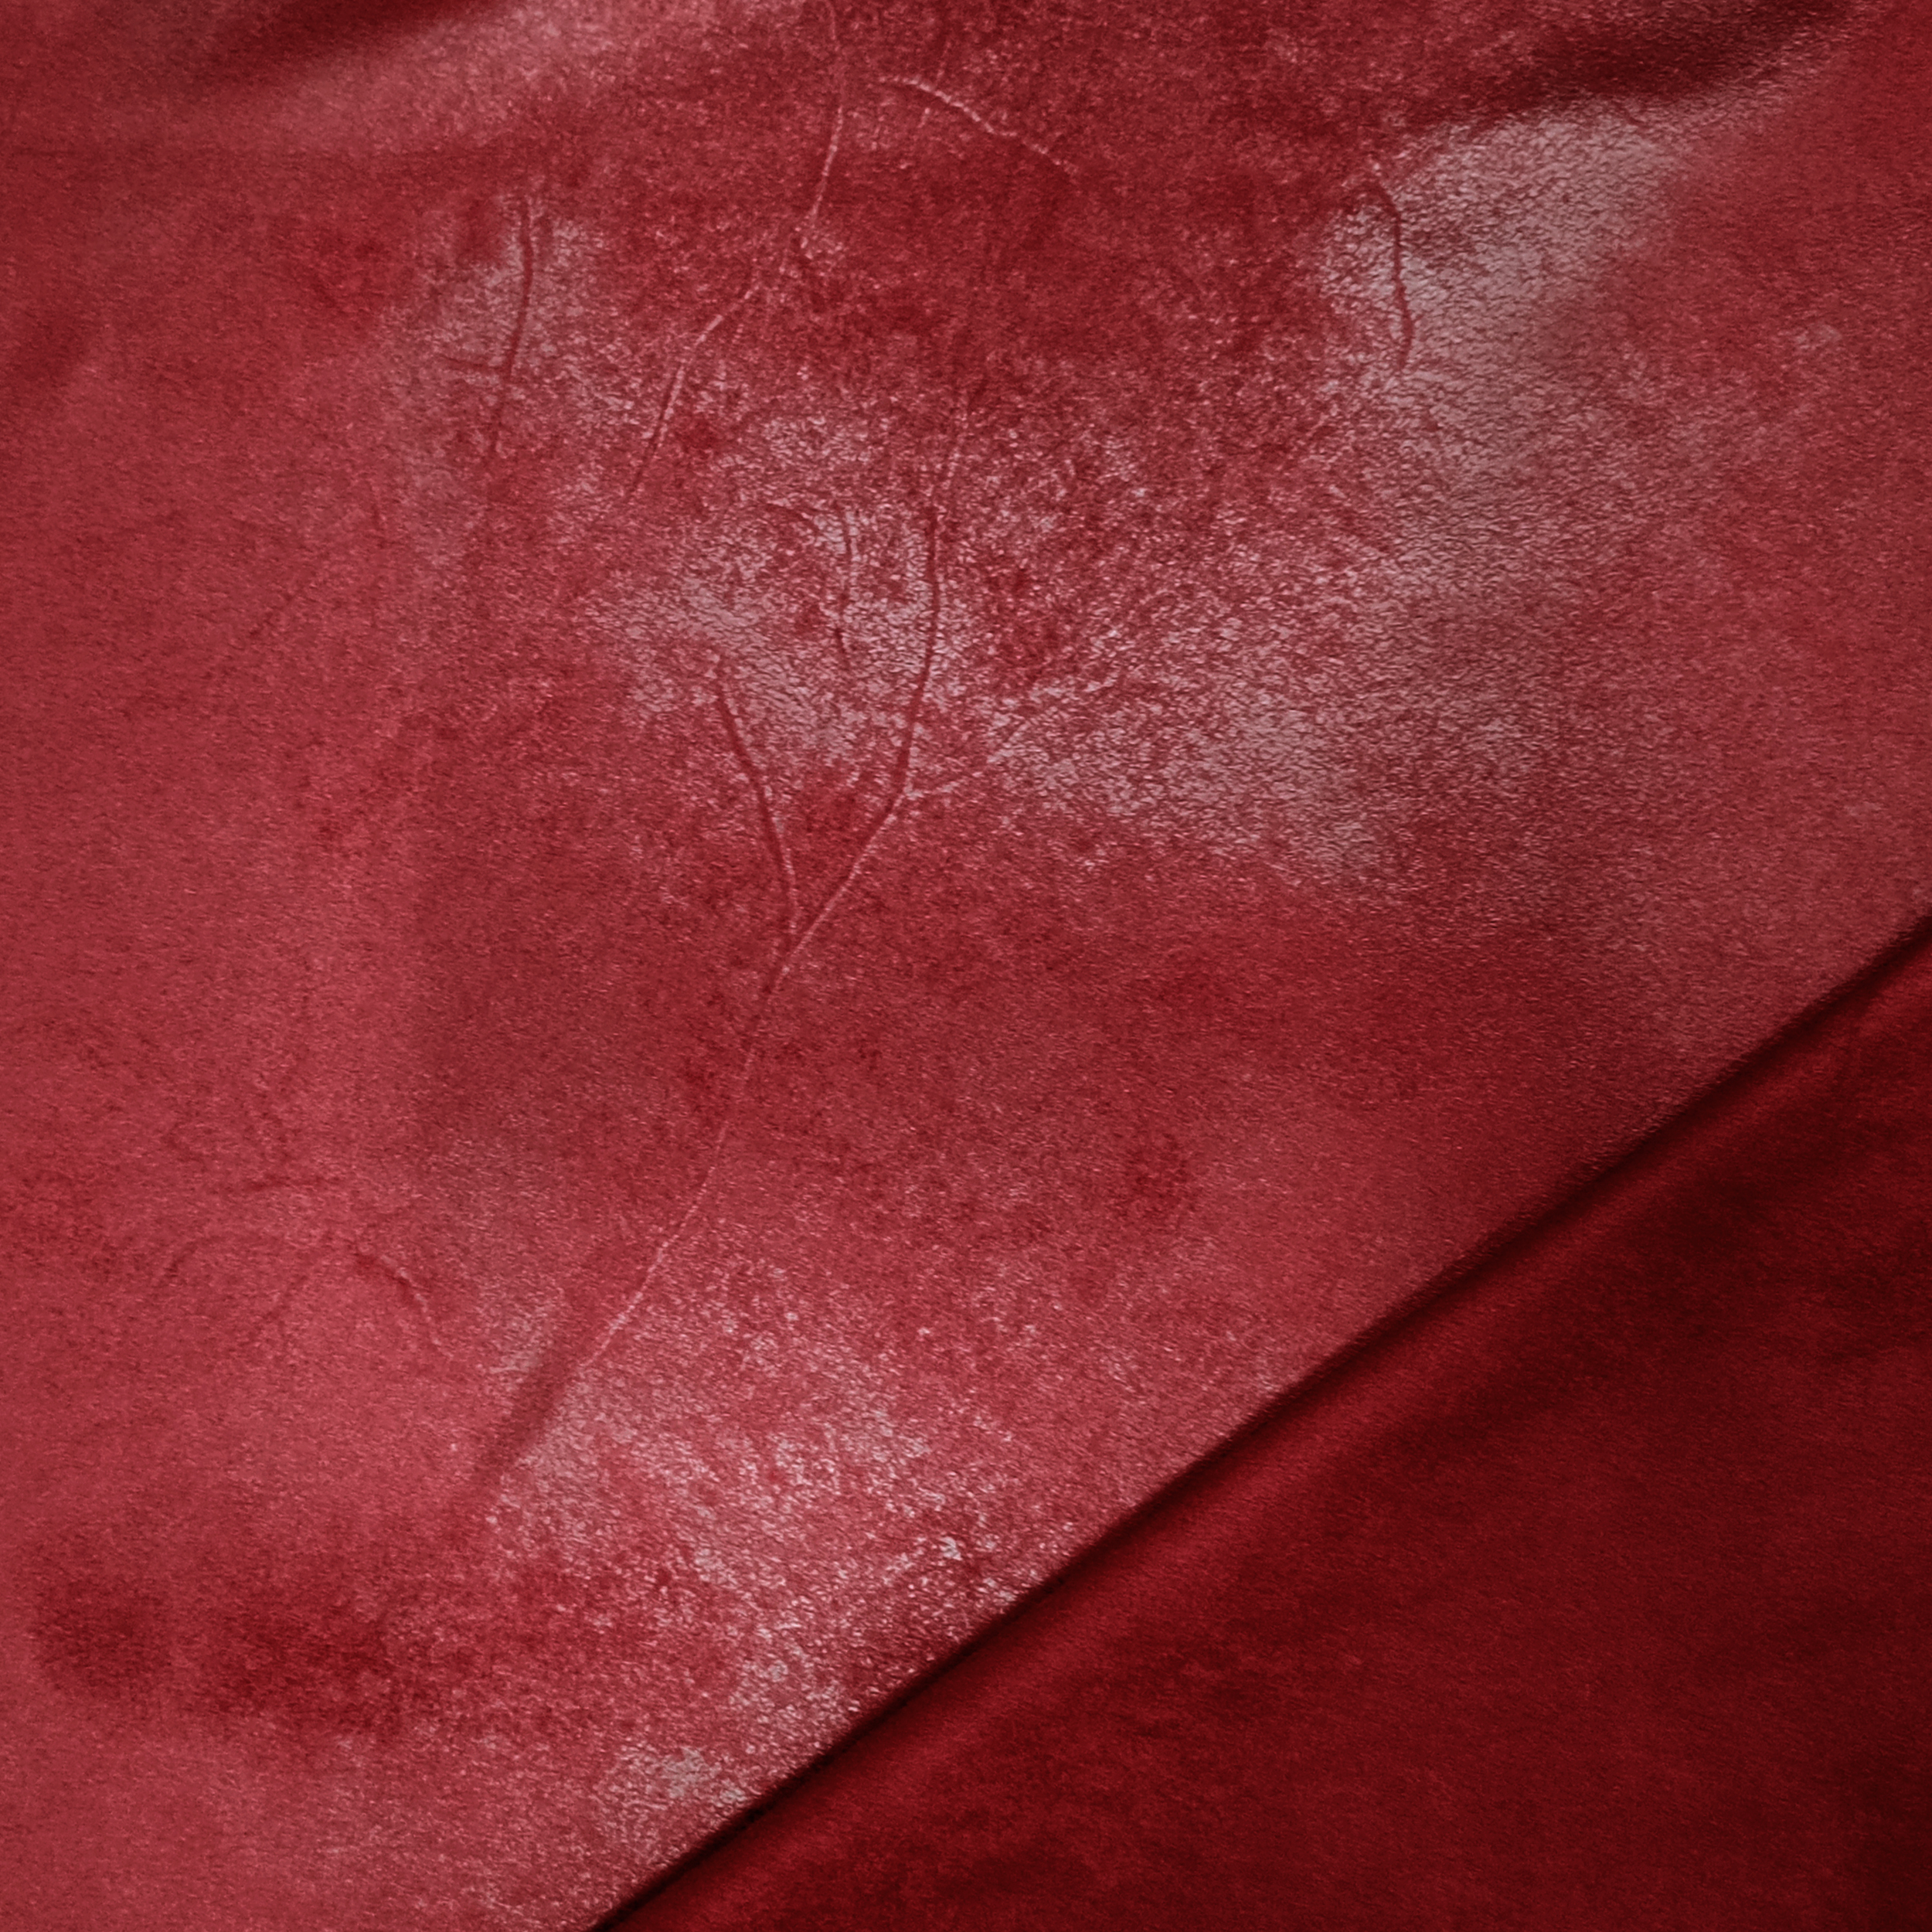 Indumenti in tessuto spalmato rosso